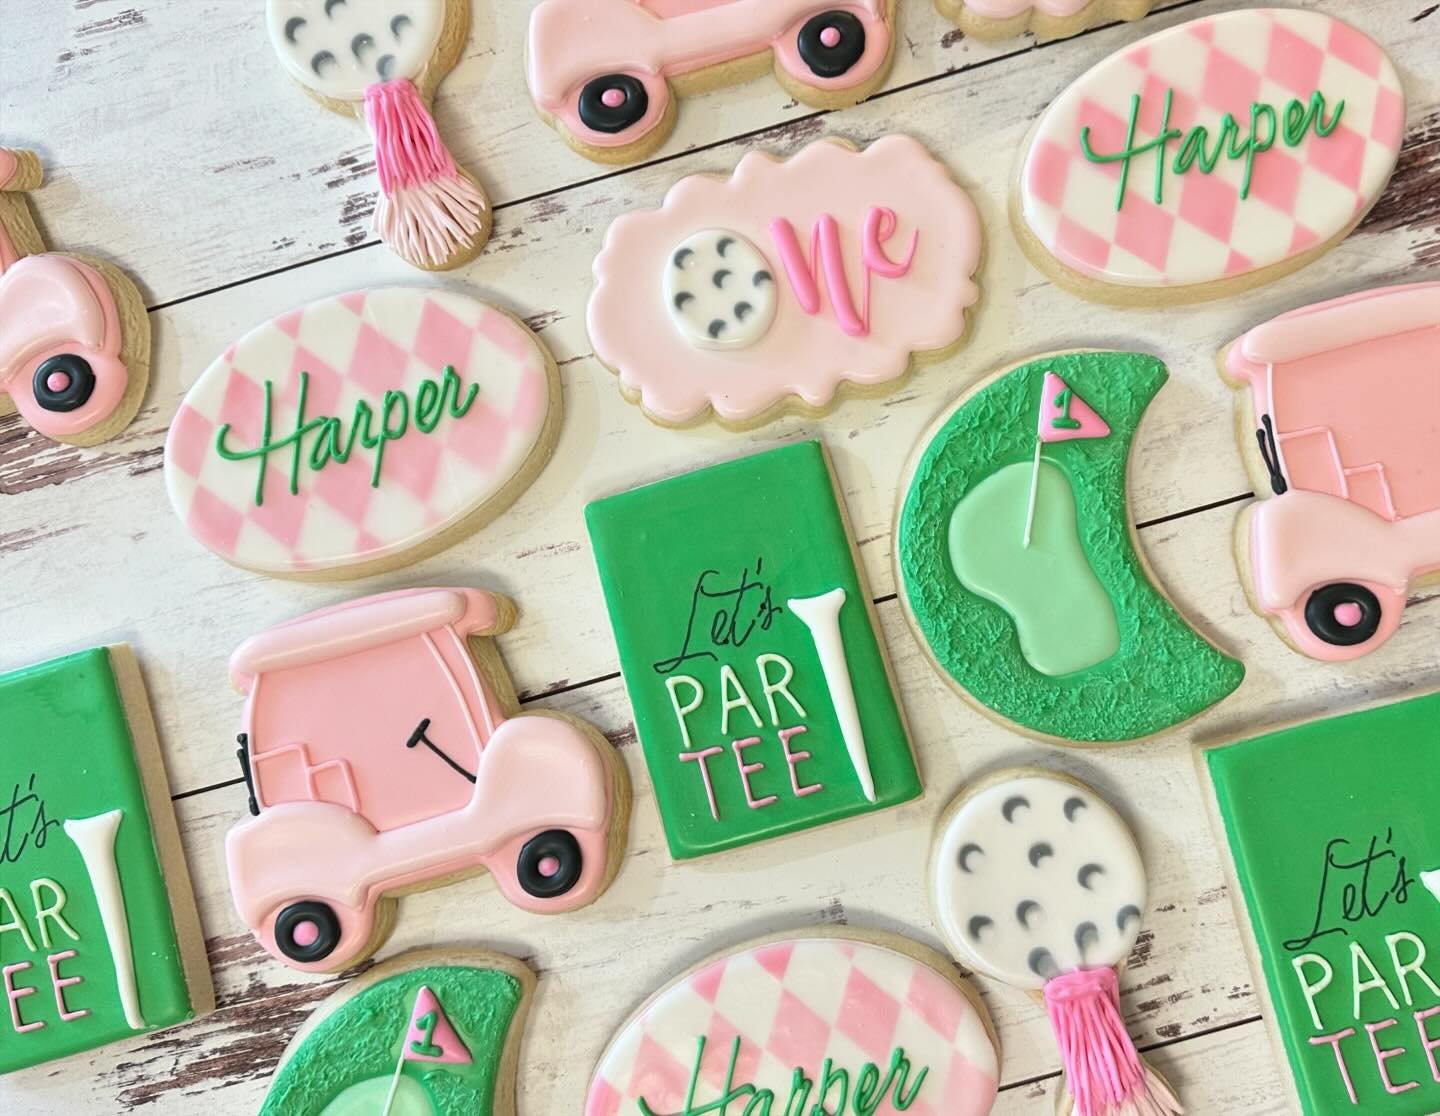 Happy 1st Birthday, Harper!

#golfcookies #jojoscookieboutique #hayesvillenc #partyfavors #customcookies #decoratedcookies